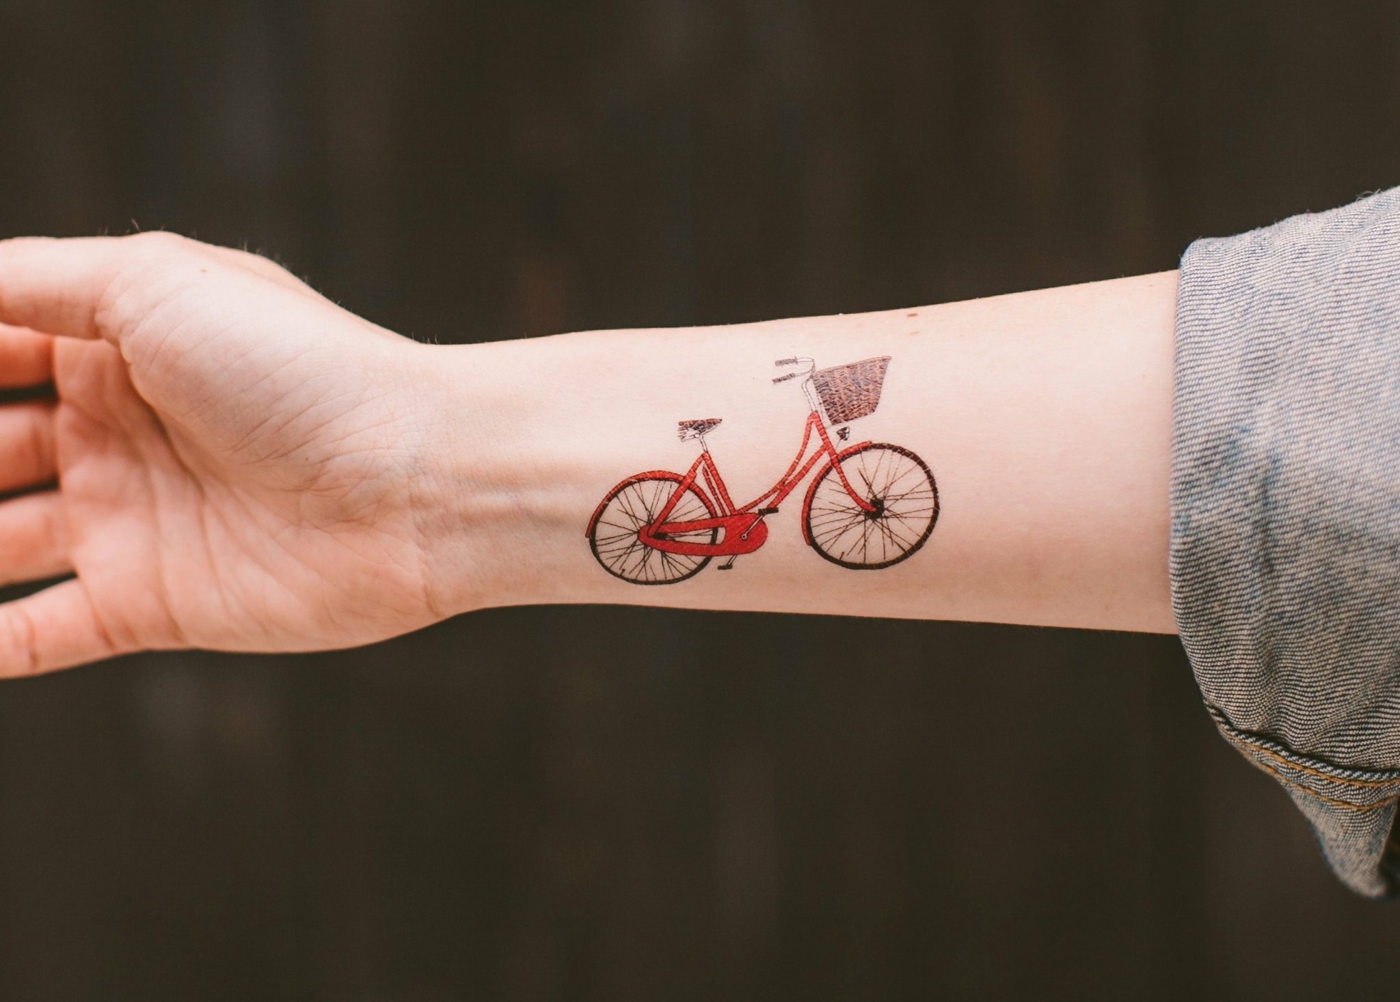 Rote Tattoos Sind Attraktiv Wir Klaren Uber Mythen Auf Zeigen Tolle Ideen